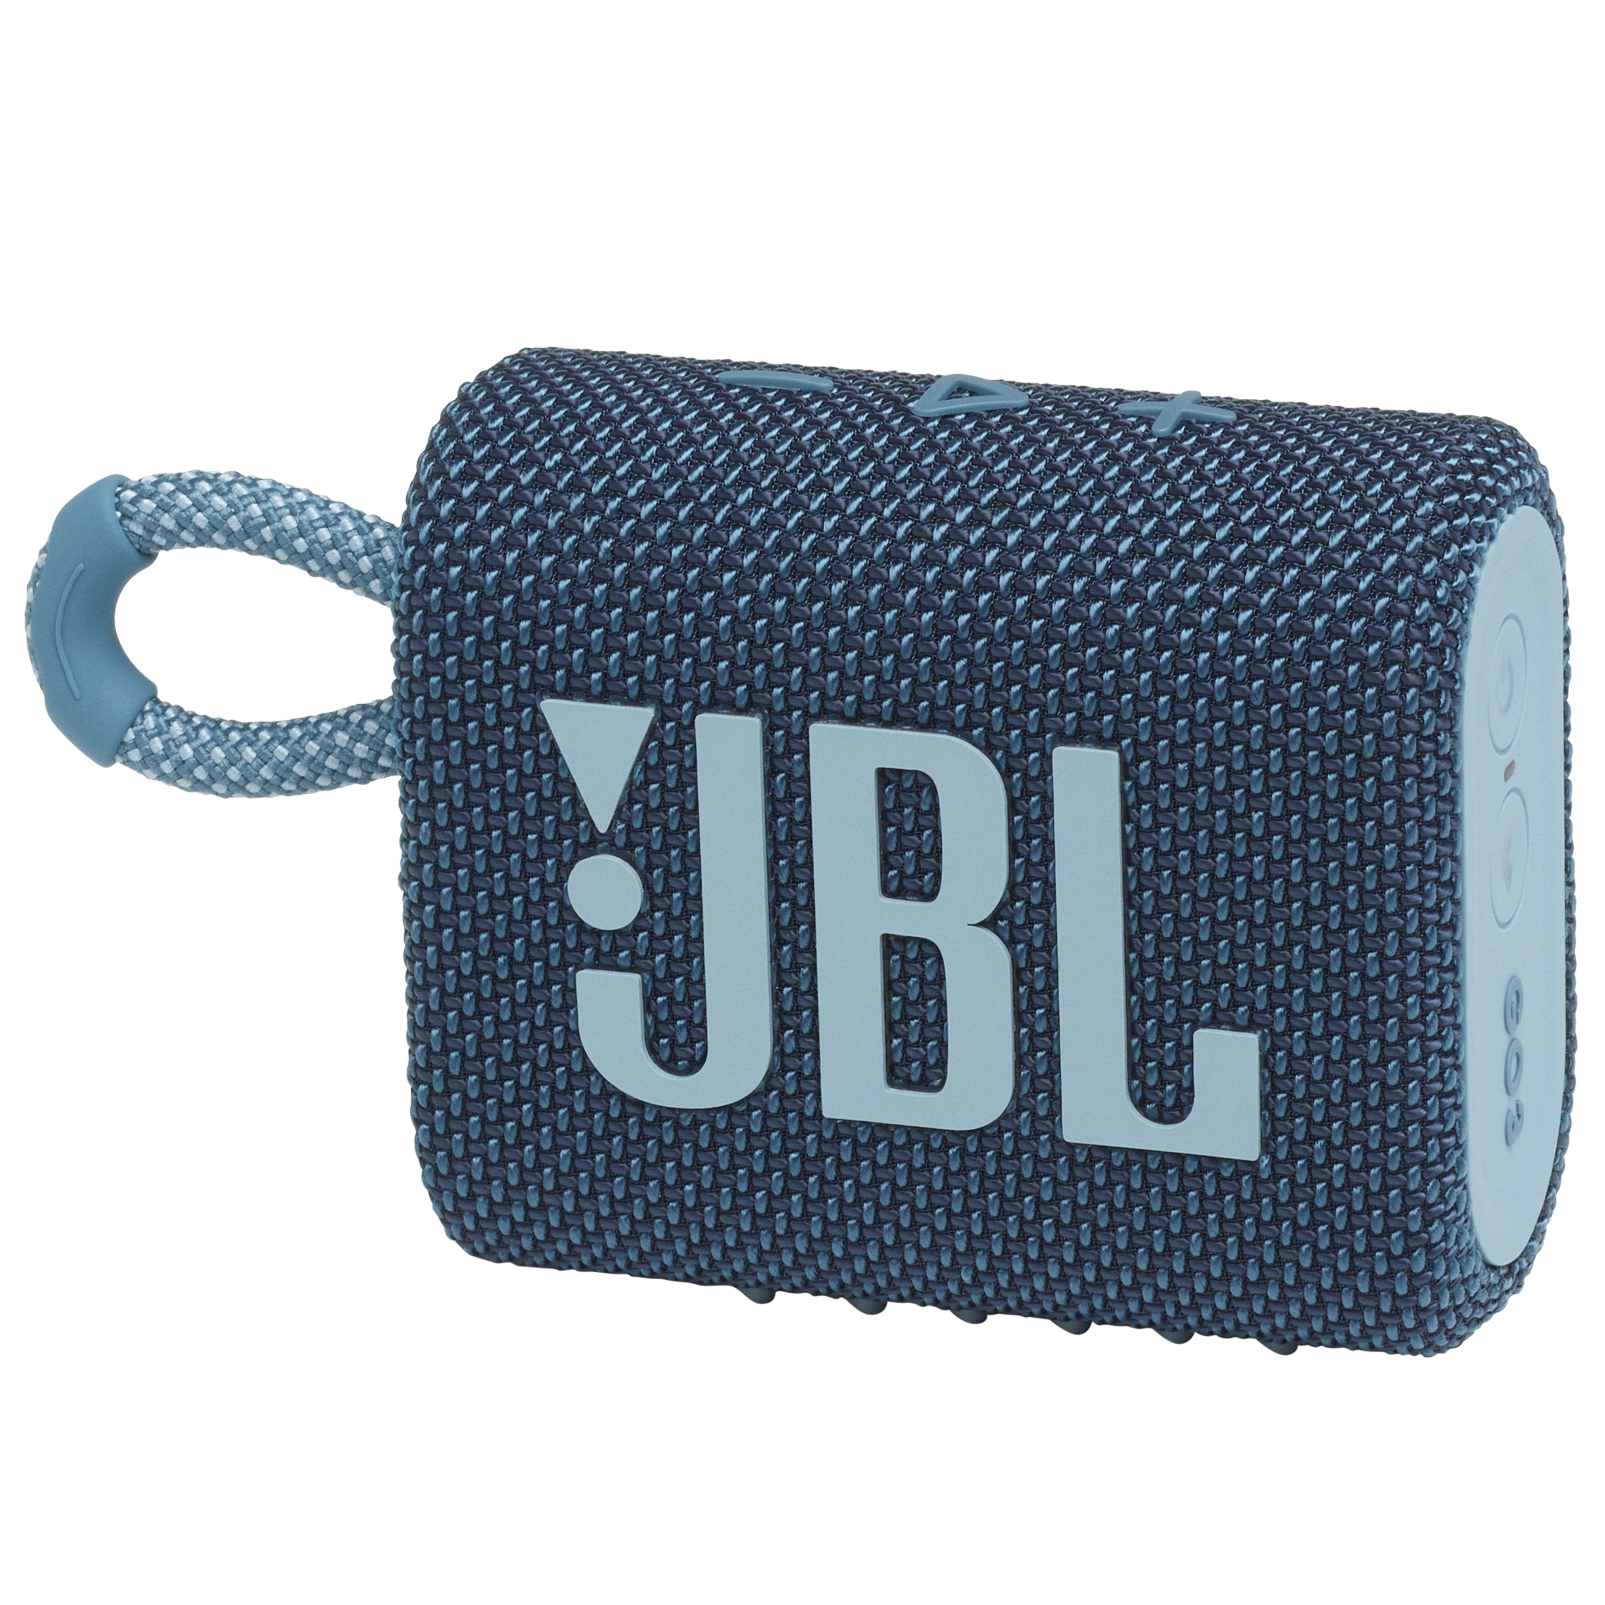 JBL Go 3 - Blue - Portable Waterproof Speaker - Hero